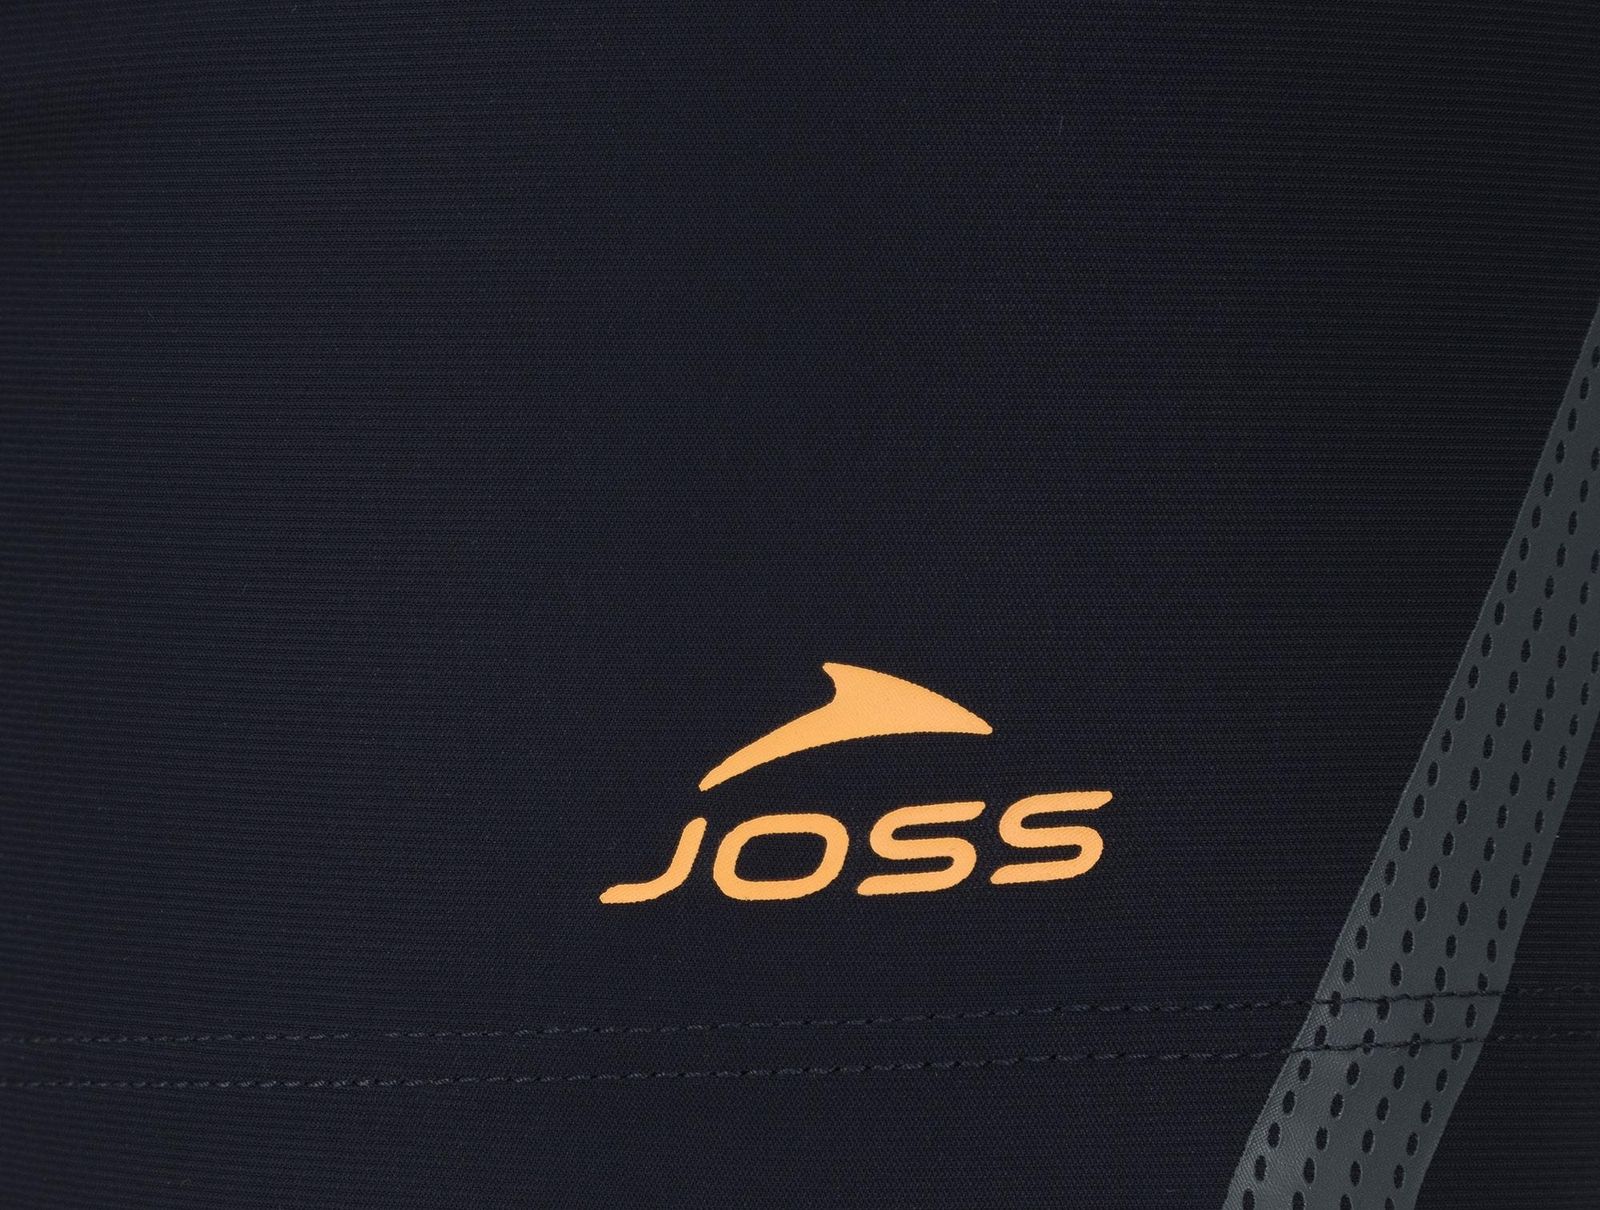   Joss Men's Swim Trunks, : -. S19AJSWTM04-Z4.  52